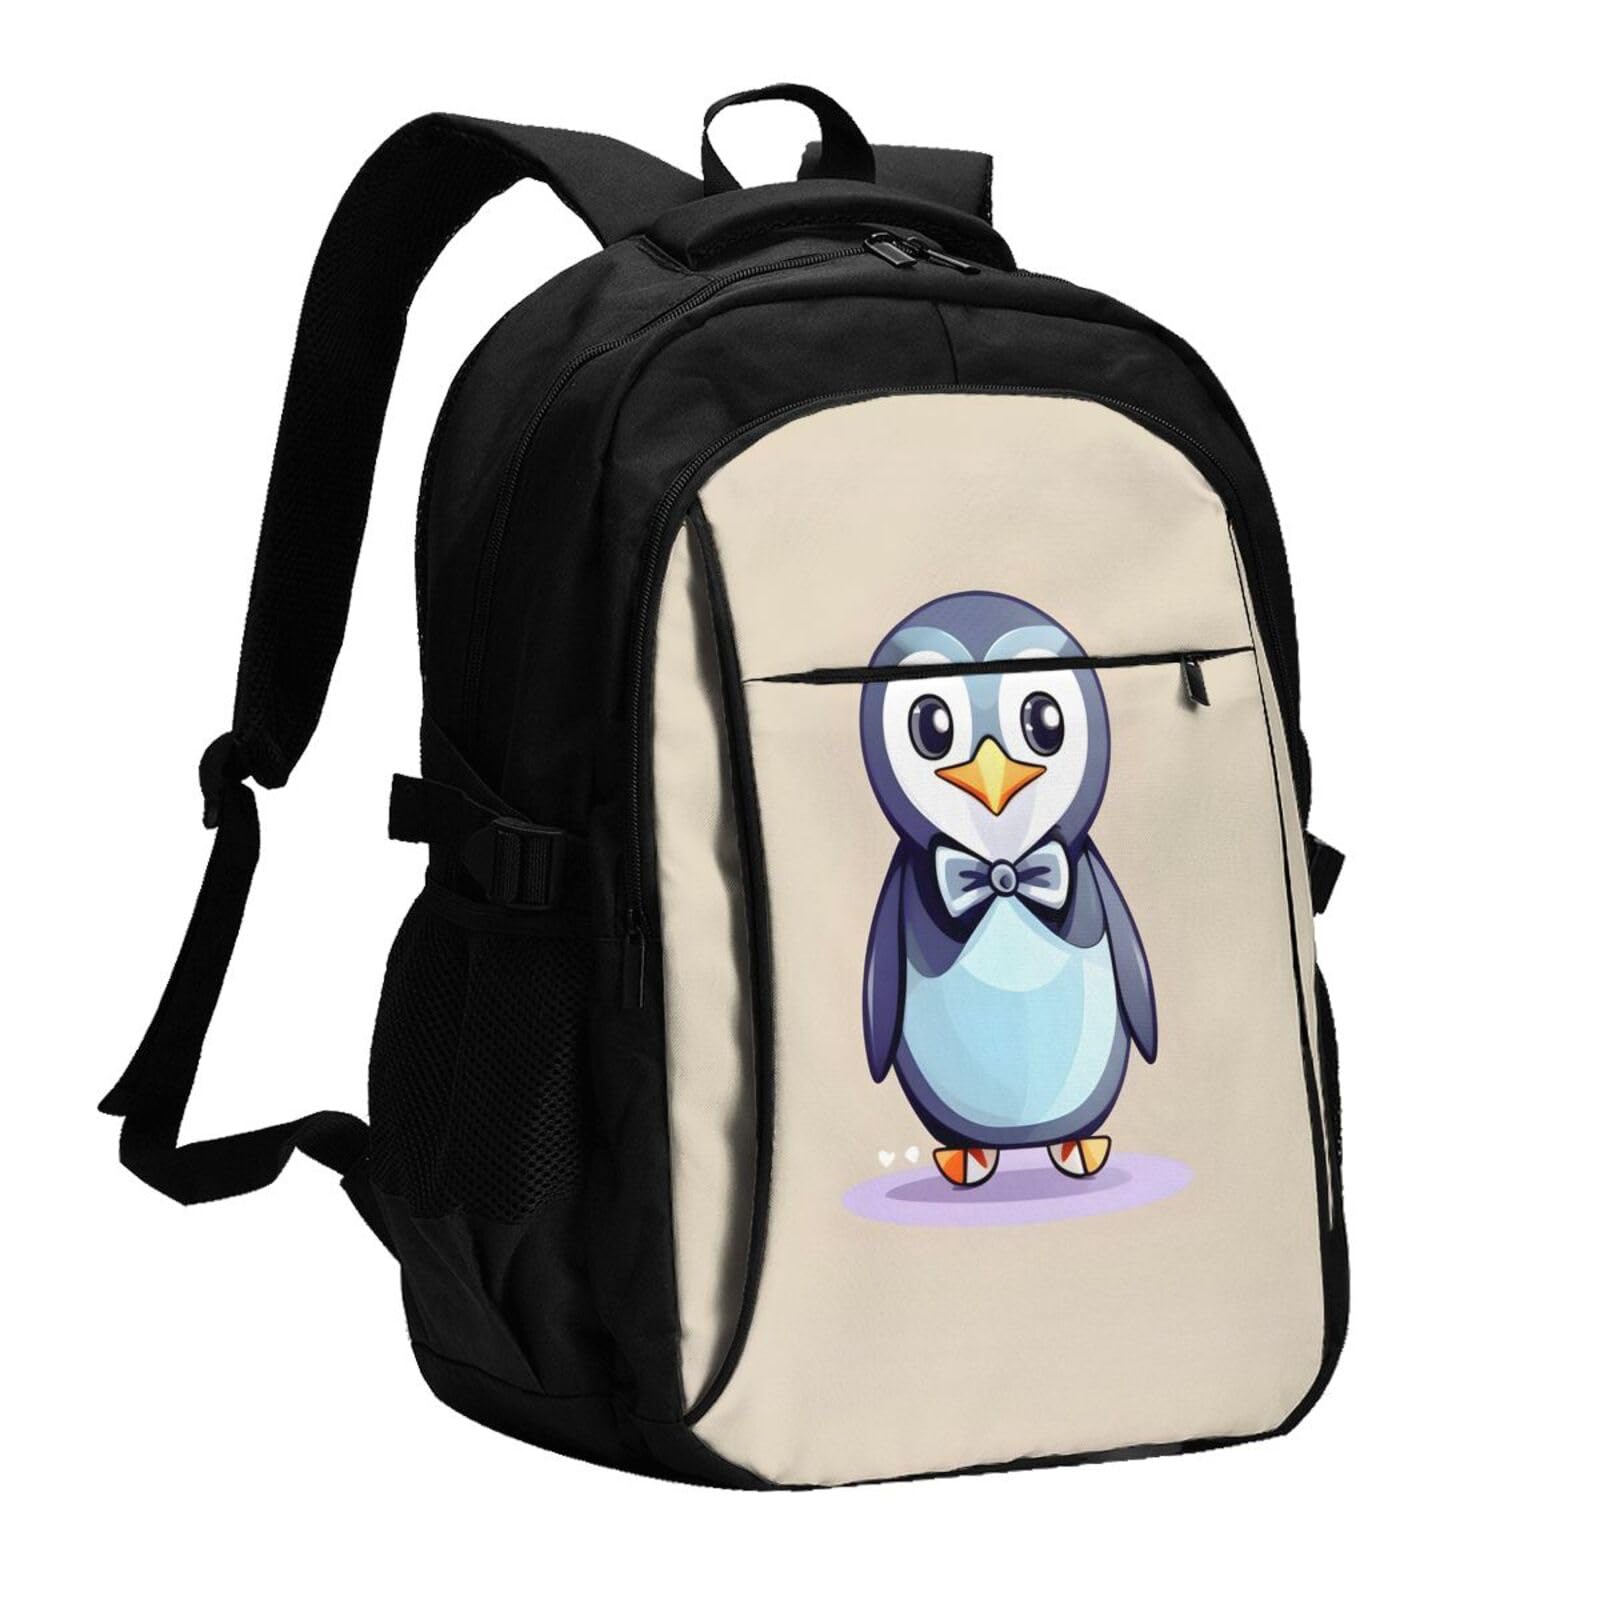 送料無料OdDdot Cute Penguin Prints Travel Laptop Usb Backpack Water Resistant College Bag Computer Bag Fits 15.6 Inch No